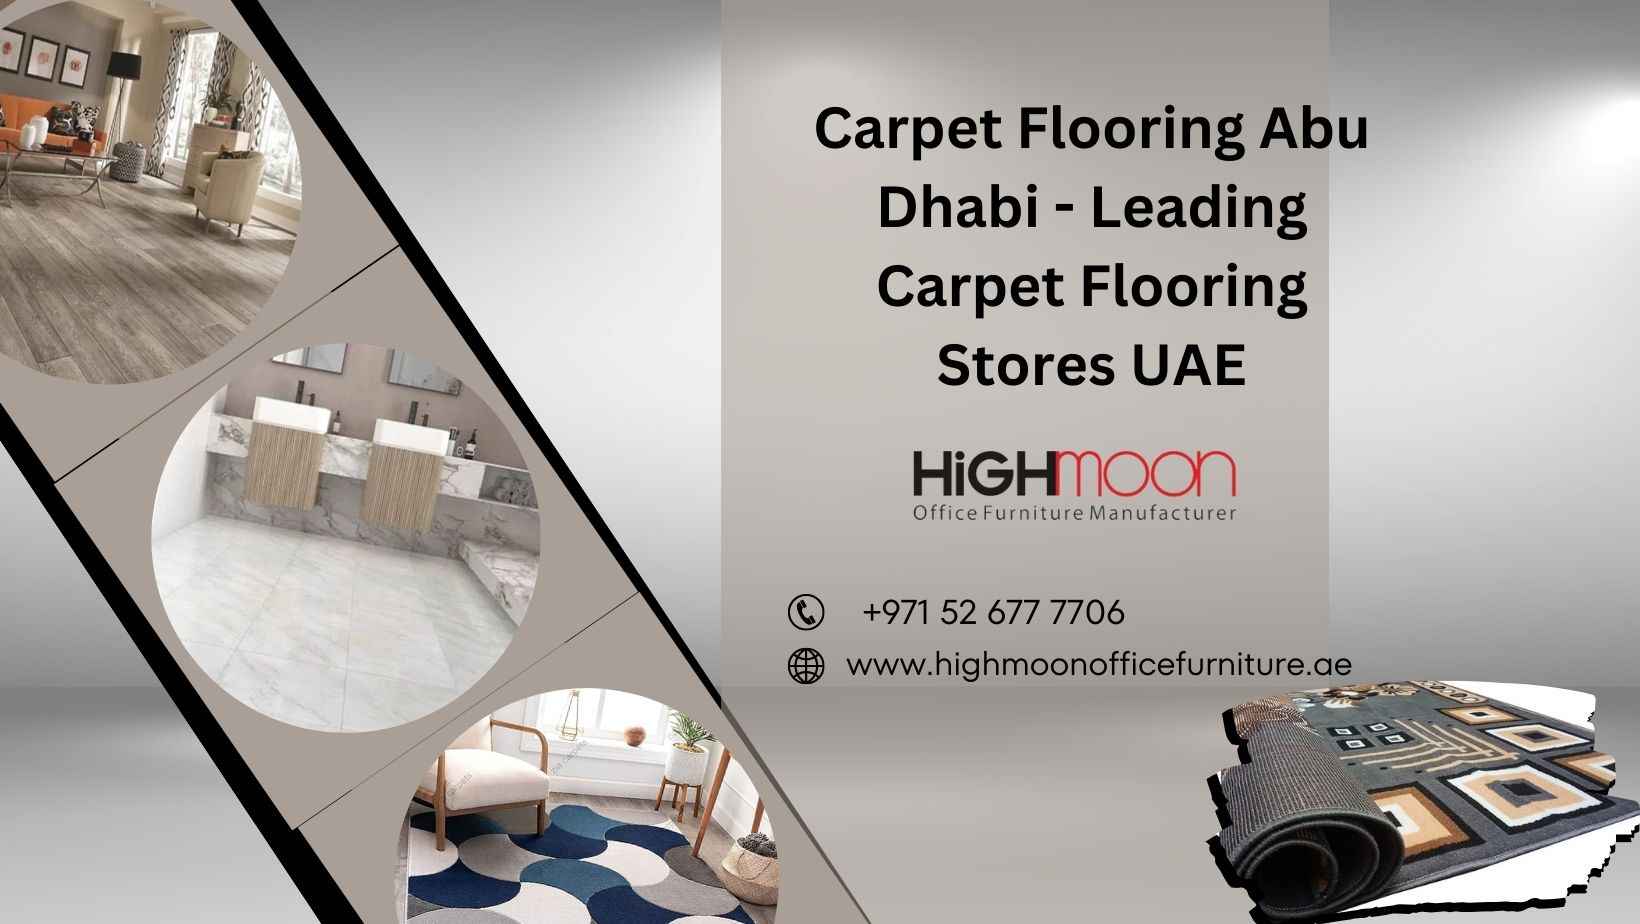 Buy Best Carpet tiles and Do Carpet Flooring in Abu Dhabi